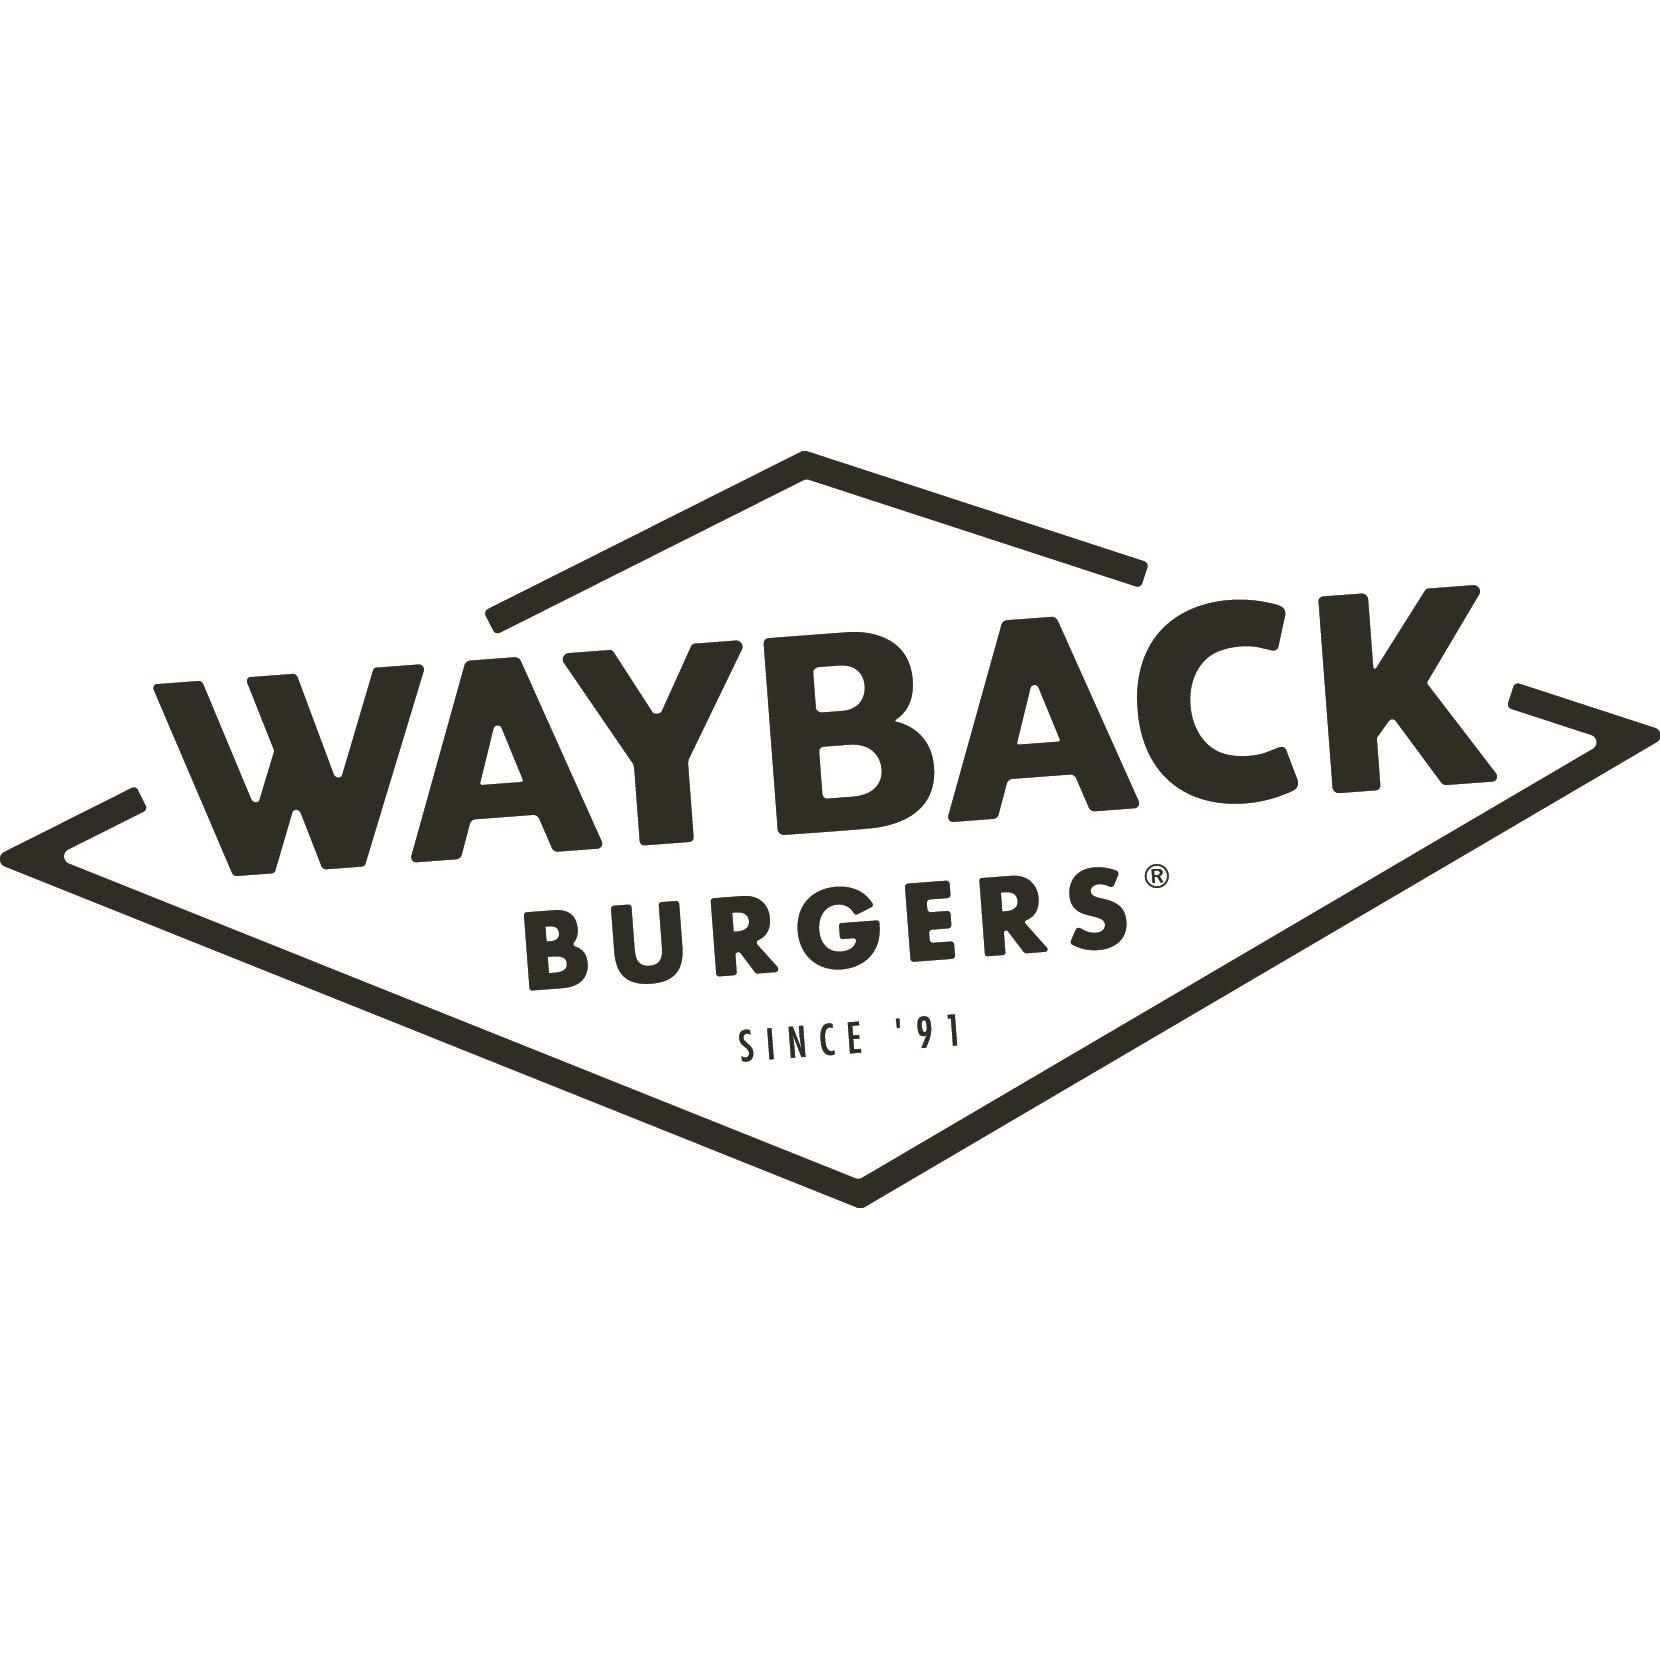 Wayback Burgers - Imprimeurs